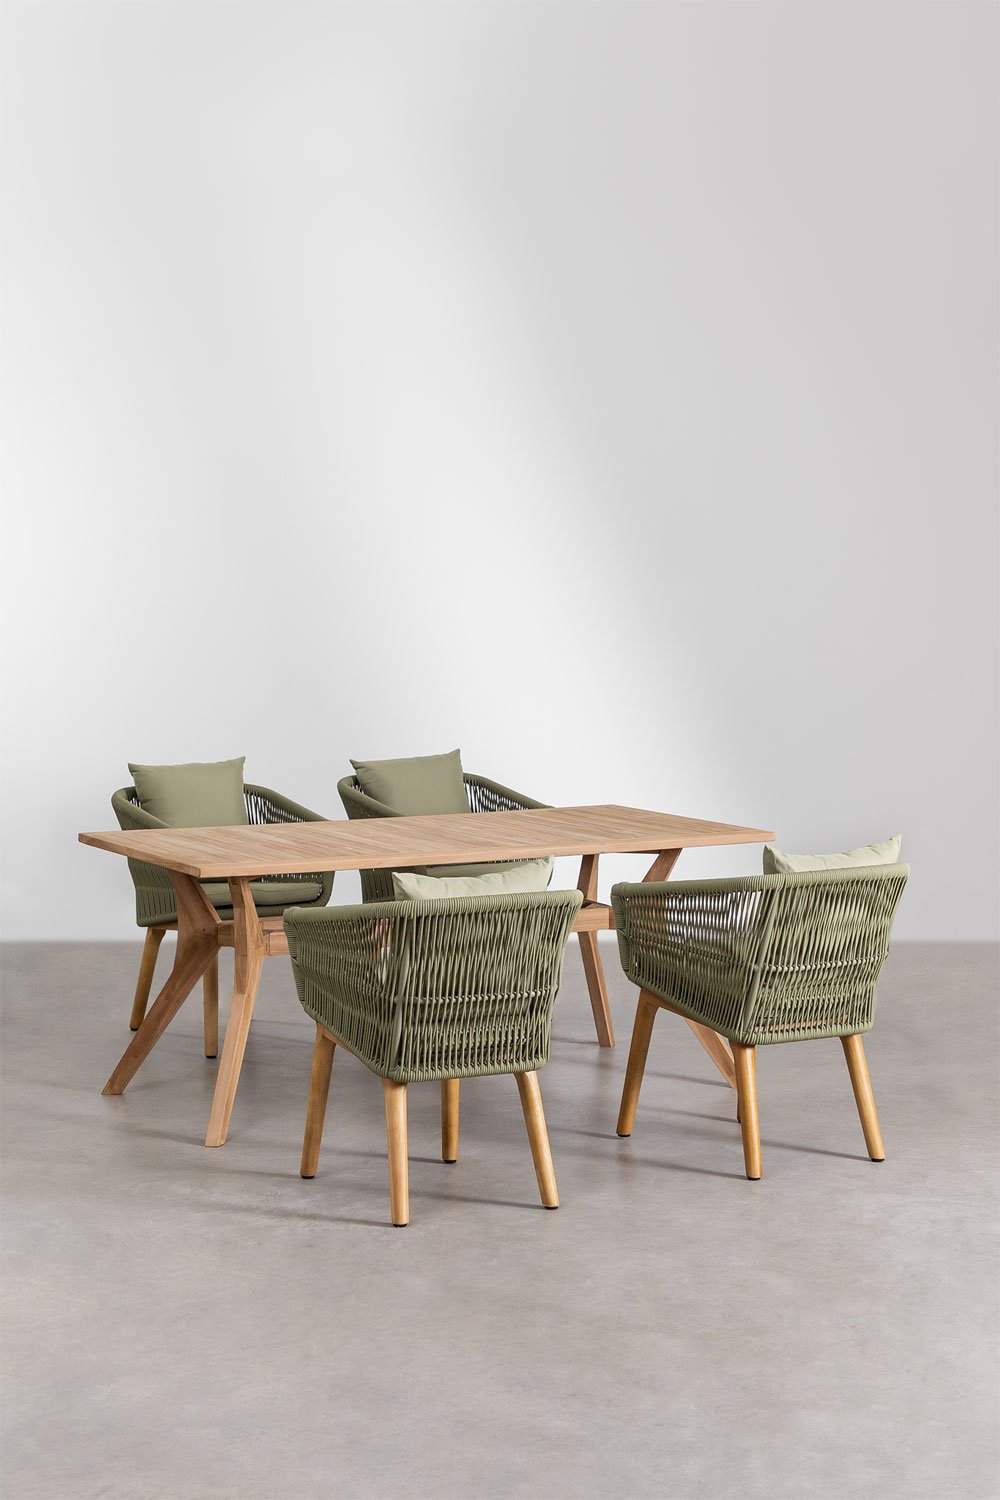 Yolen rechthoekige teakhouten tafelset (180x90 cm) en 4 Barker tuinstoelen, galerij beeld 1